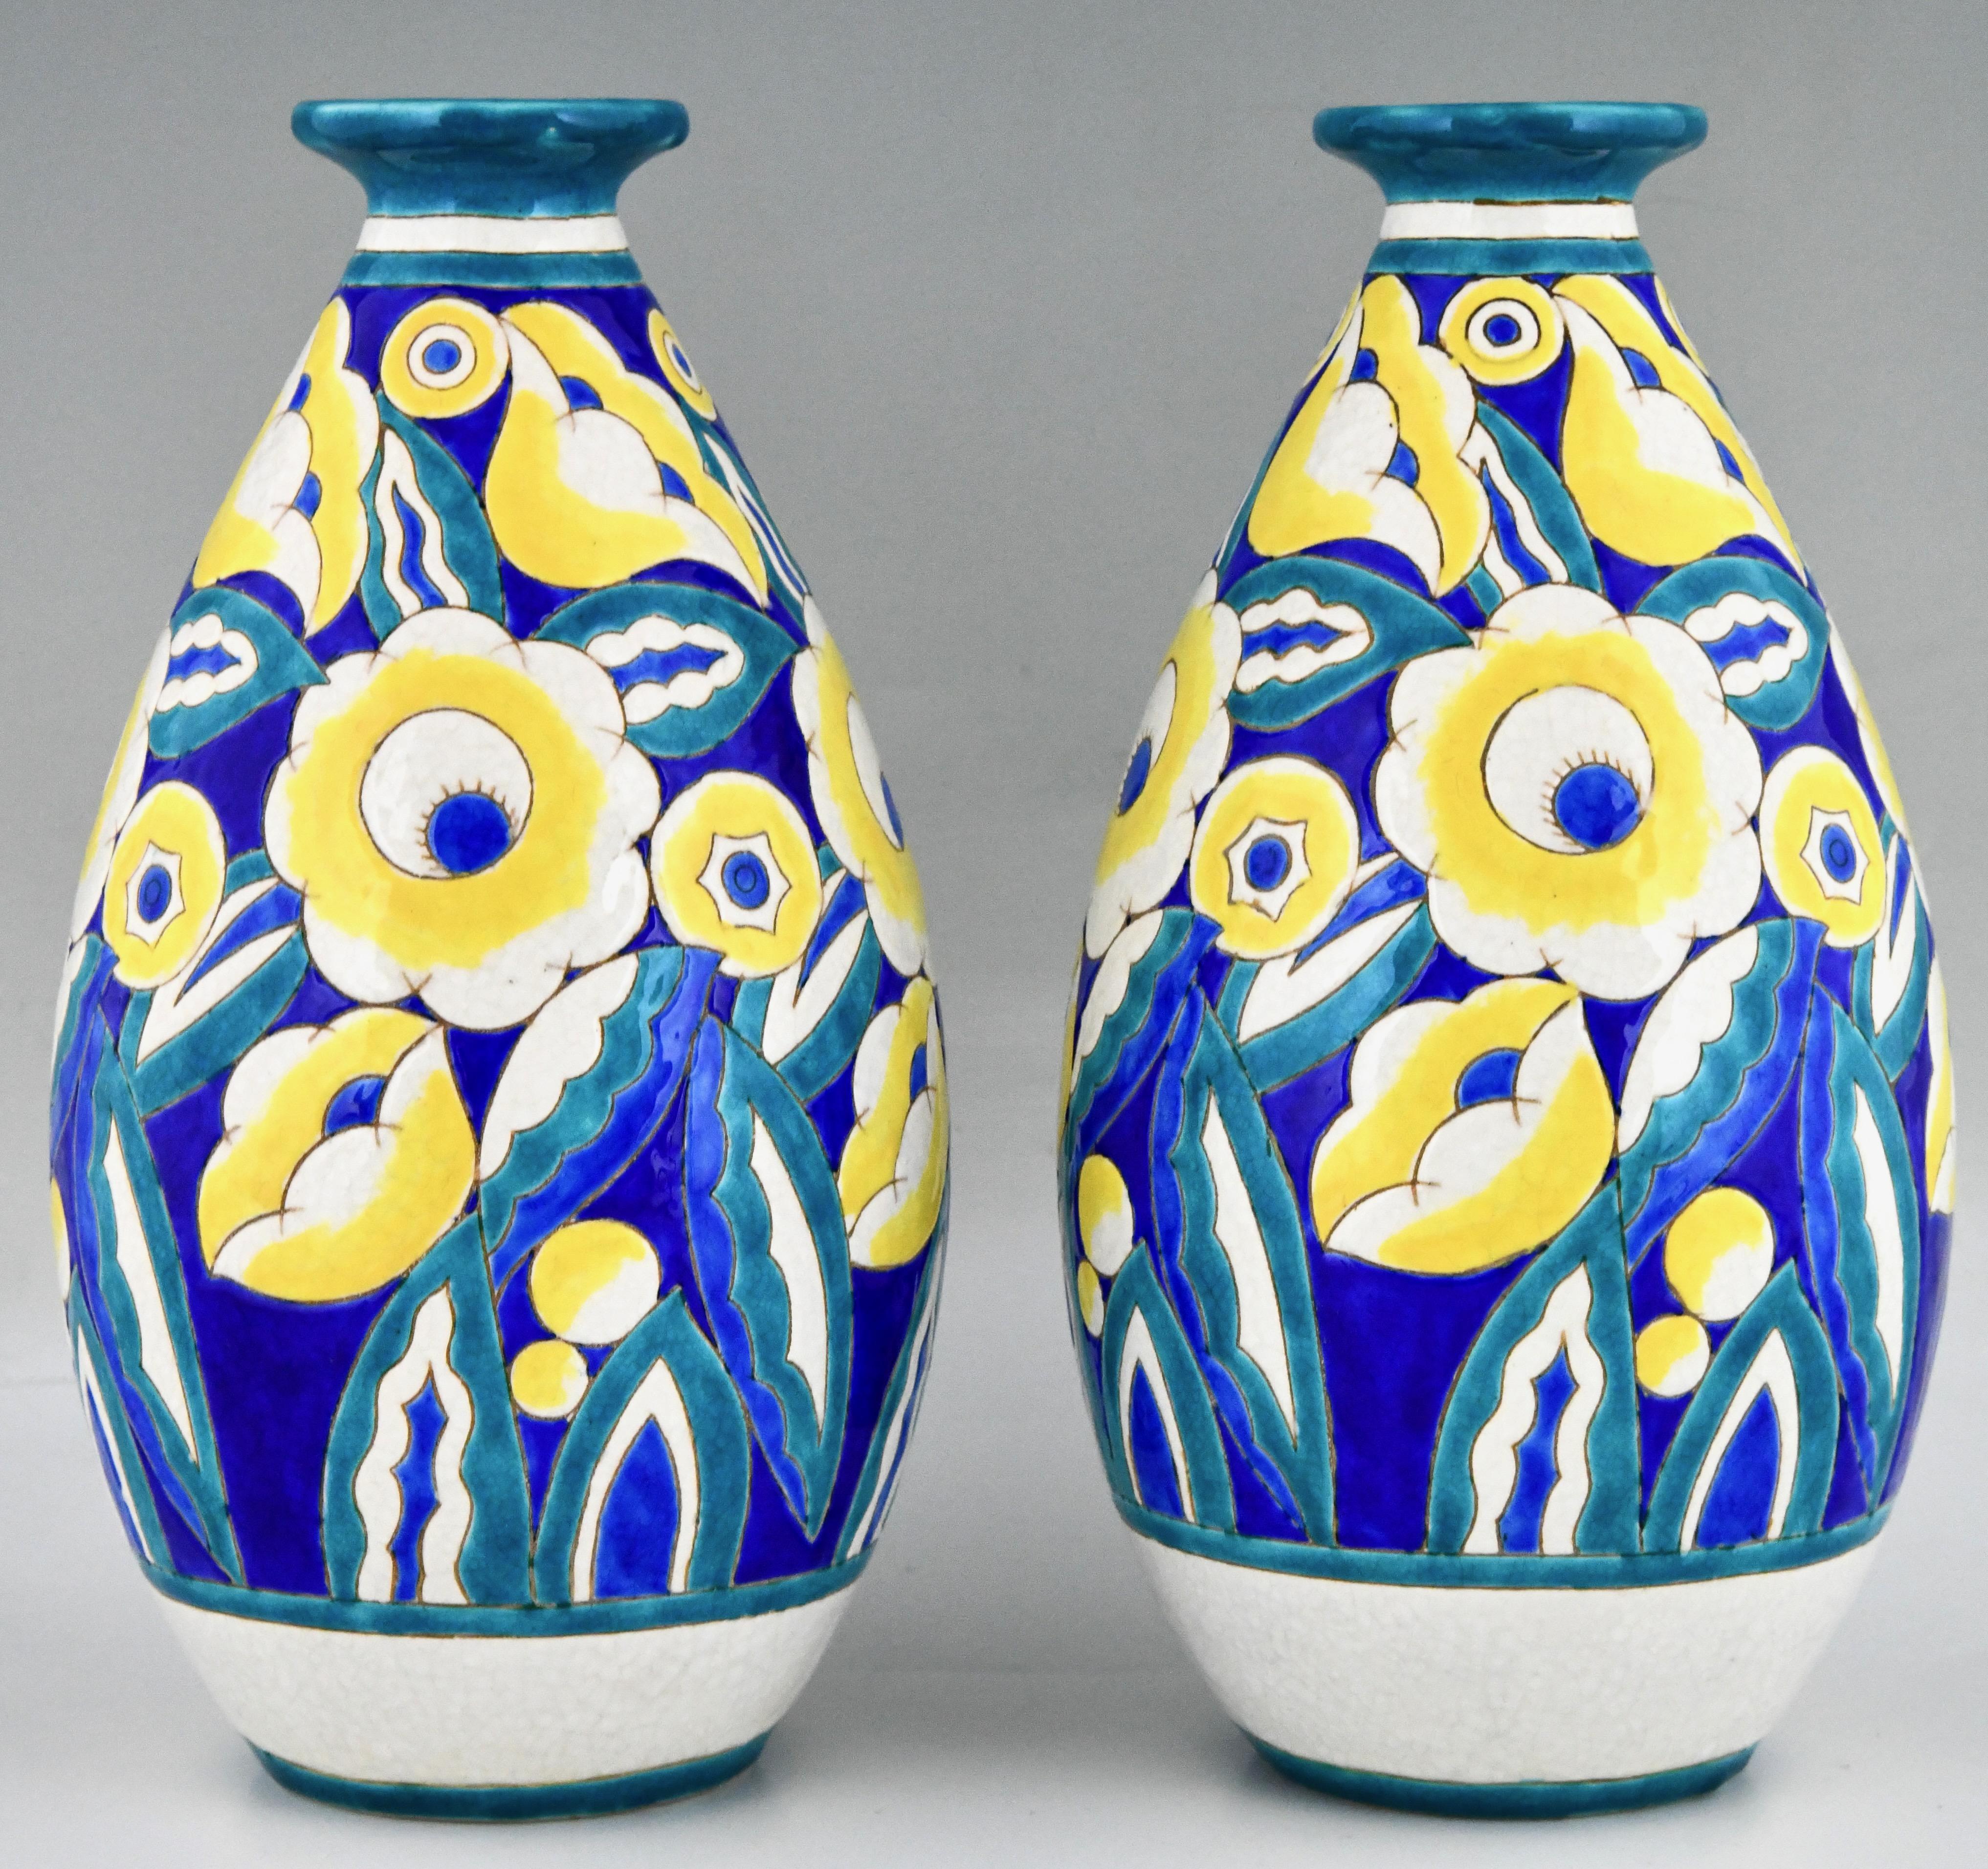 Paar Keramikvasen mit Blumen im Art déco-Stil von Keramis, Belgien.
Türkisfarbene, blaue, weiße und gelbe Craquelé-Keramik. 
Mit dem Keramis-Stempel und der Modellnummer D1558 für das Dekor.
Markiert, 22 und 960 für die Form. 
Belgien 1932. 
Dieses